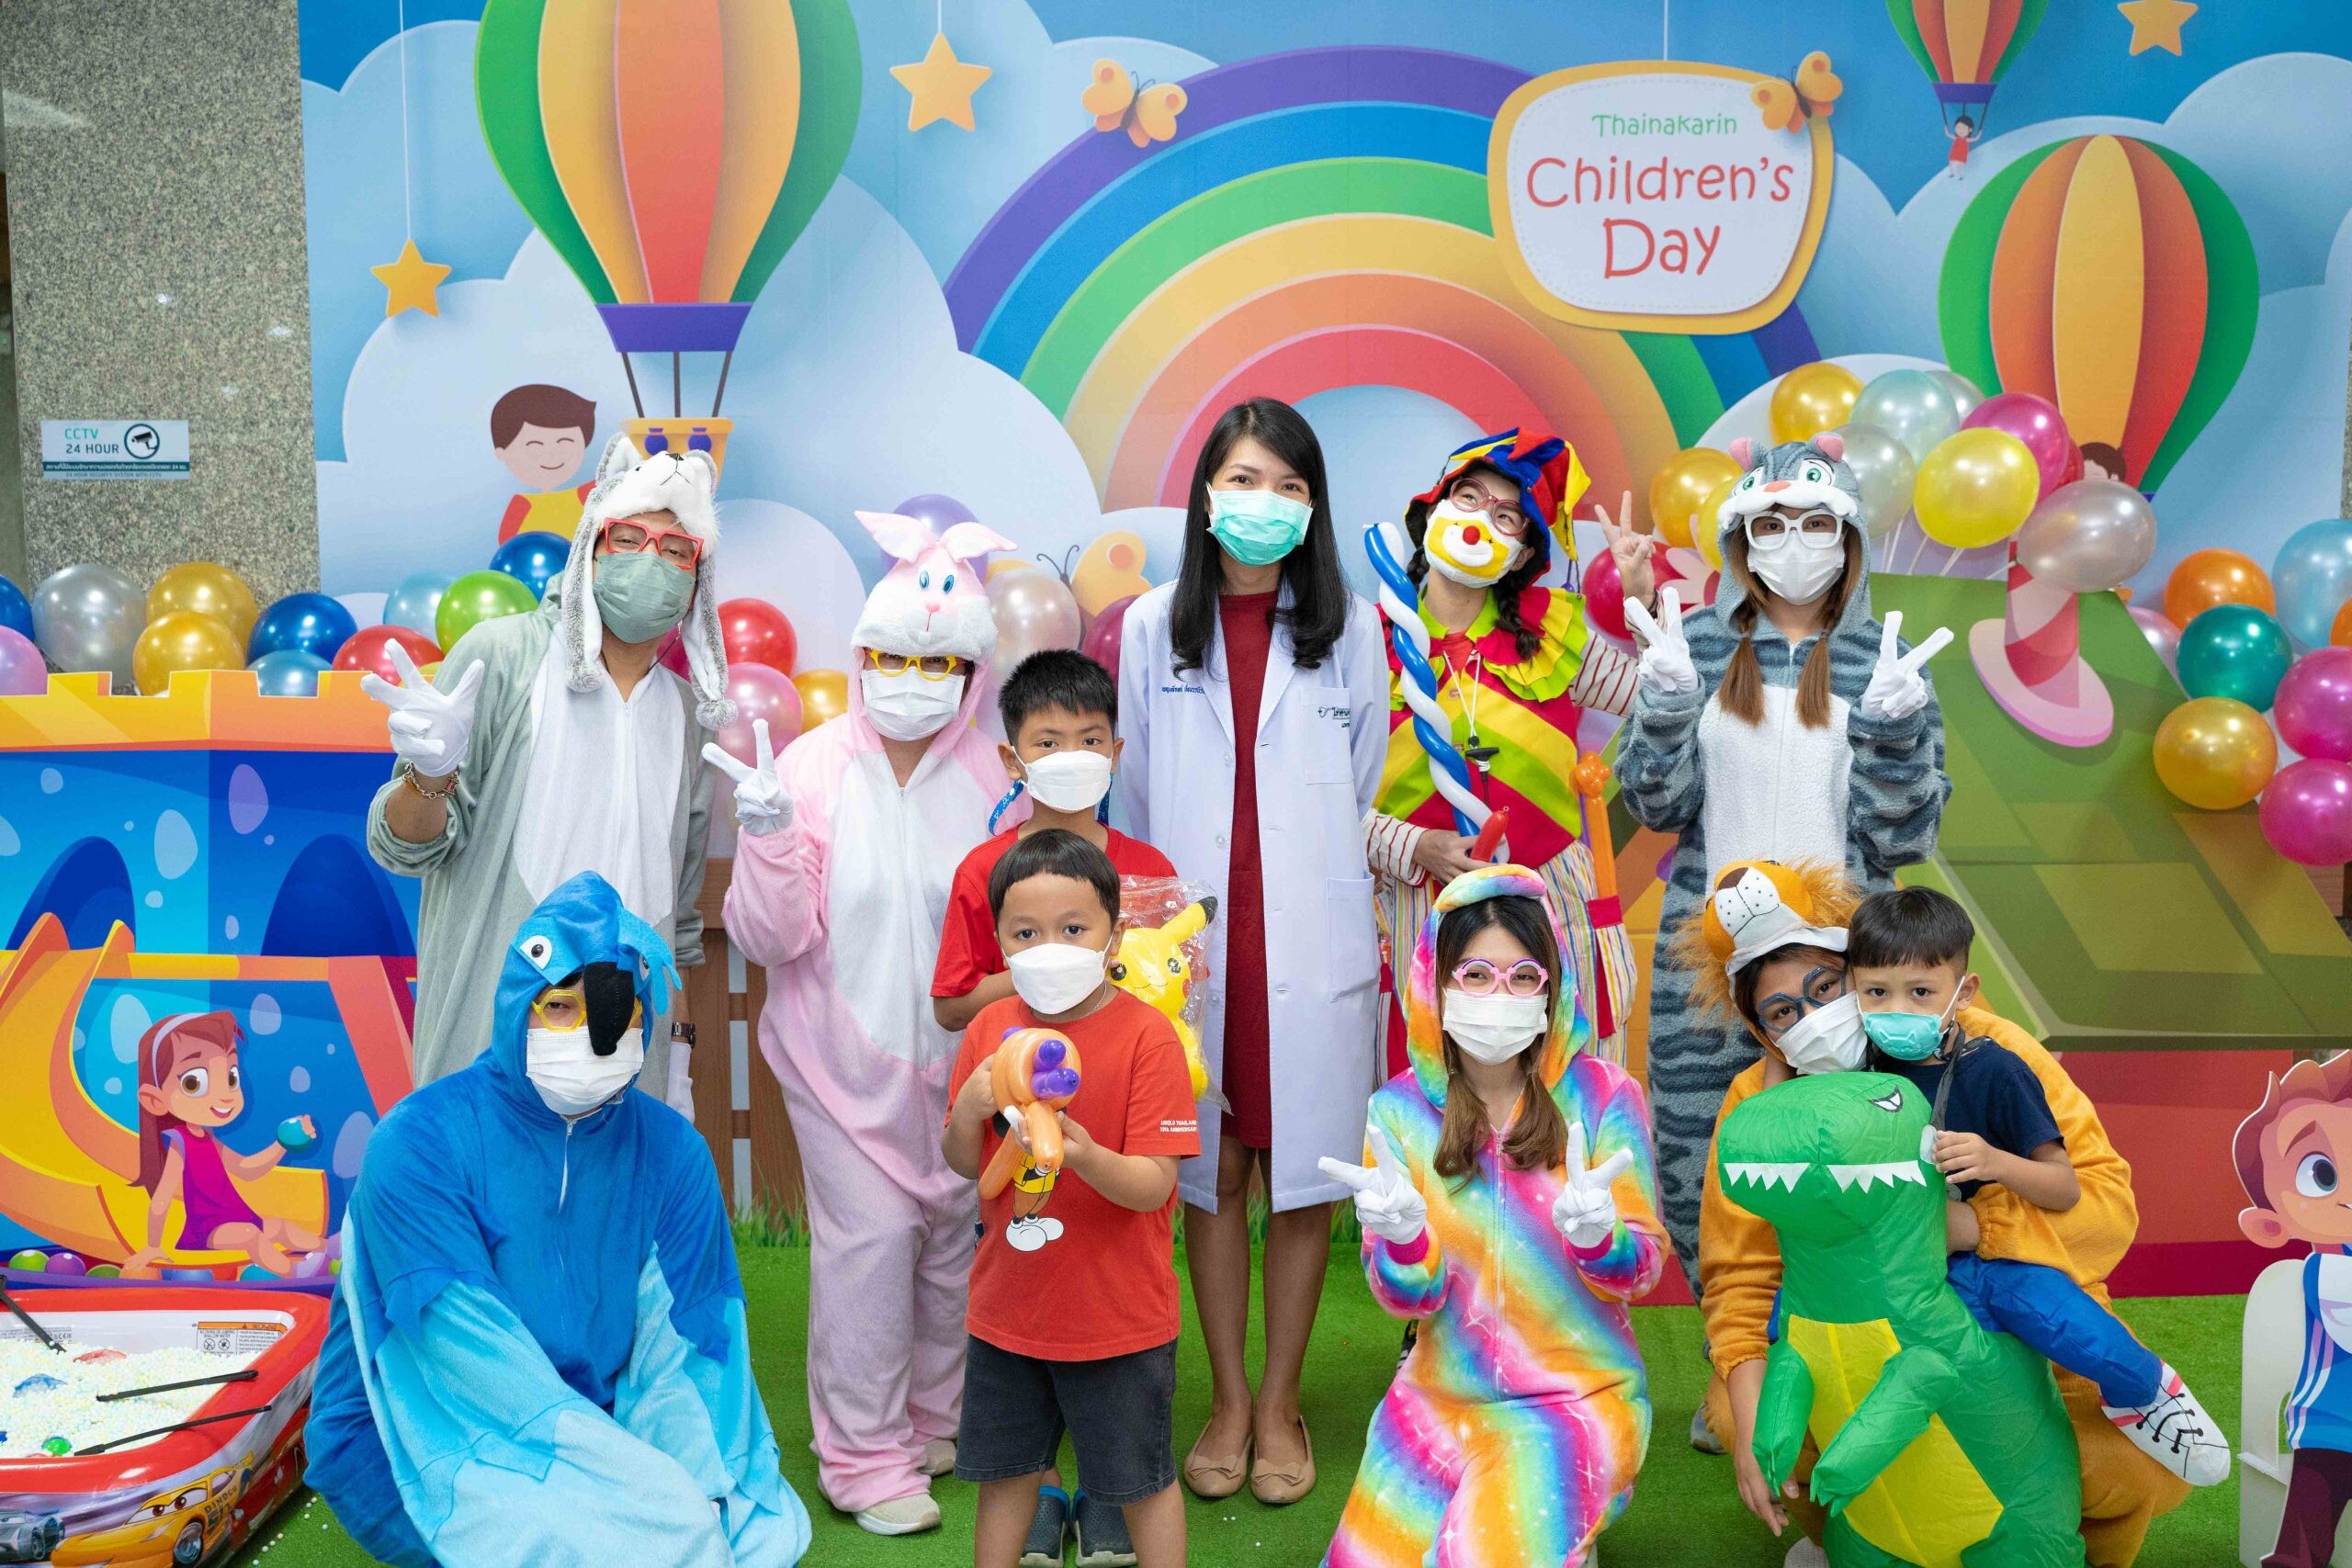 Happy Children's Day "วันเด็กสุดสนุกที่ไทยนครินทร์"